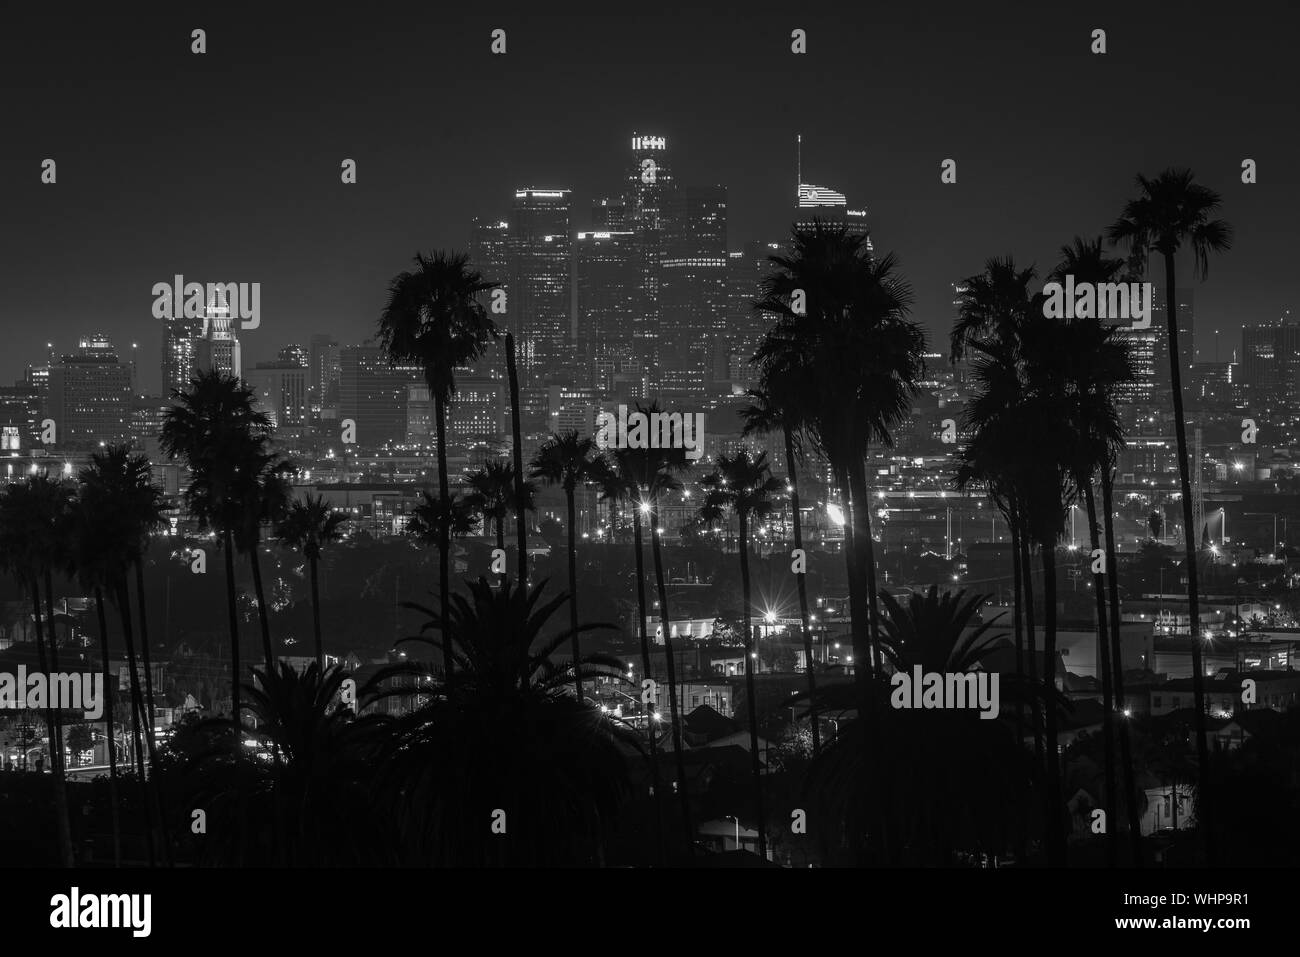 Palmen und Stadtbild Nacht Blick auf die Skyline von Downtown Los Angeles, Kalifornien Stockfoto